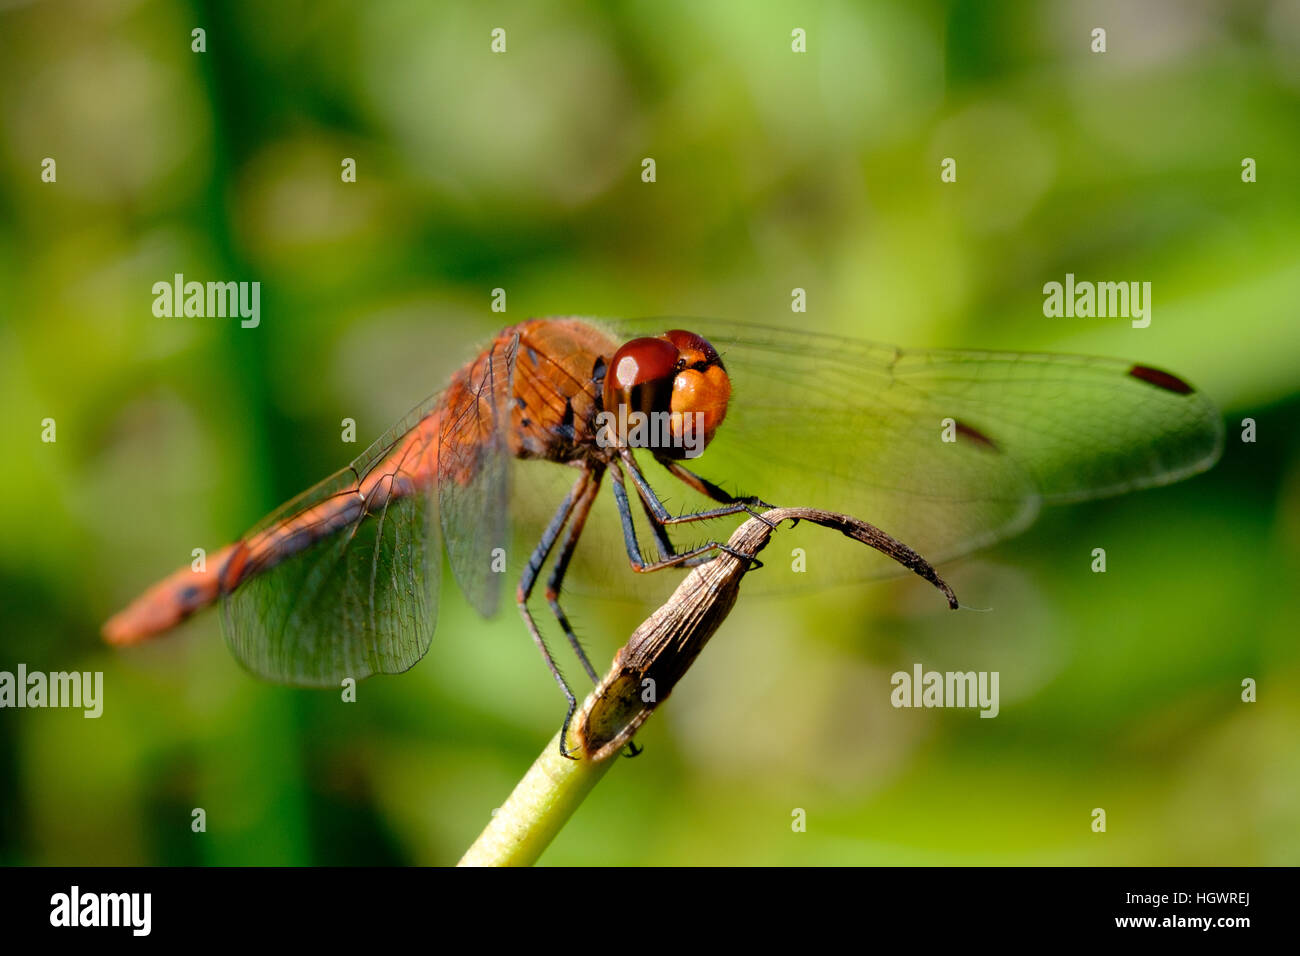 Tiro de cerca de una libélula descansando encaramado en la punta de un tallo de planta con foco en el ojo rojo que está reflejando el sol, a punto de despegar. Foto de stock